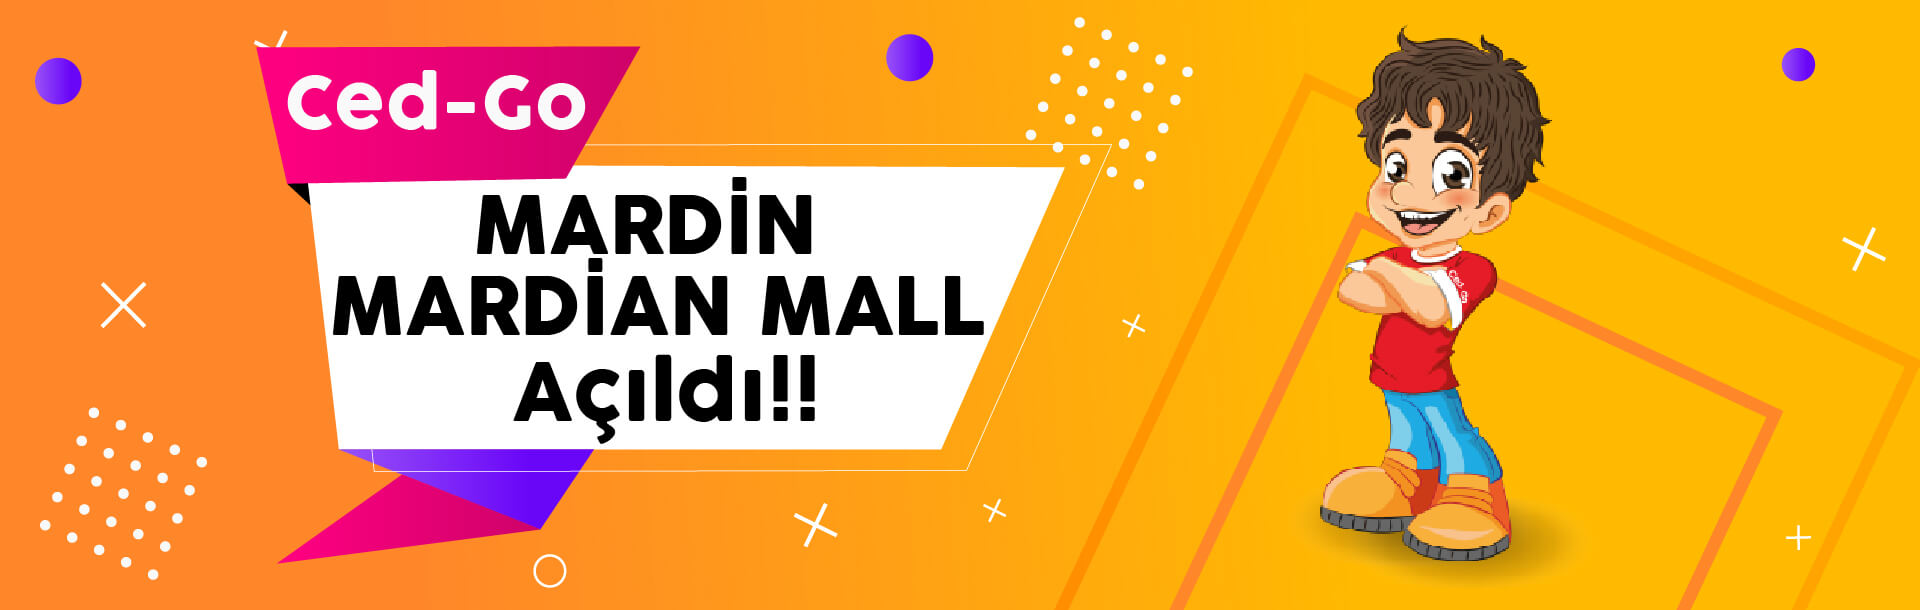 cedgo mardin mardian mall açıldı